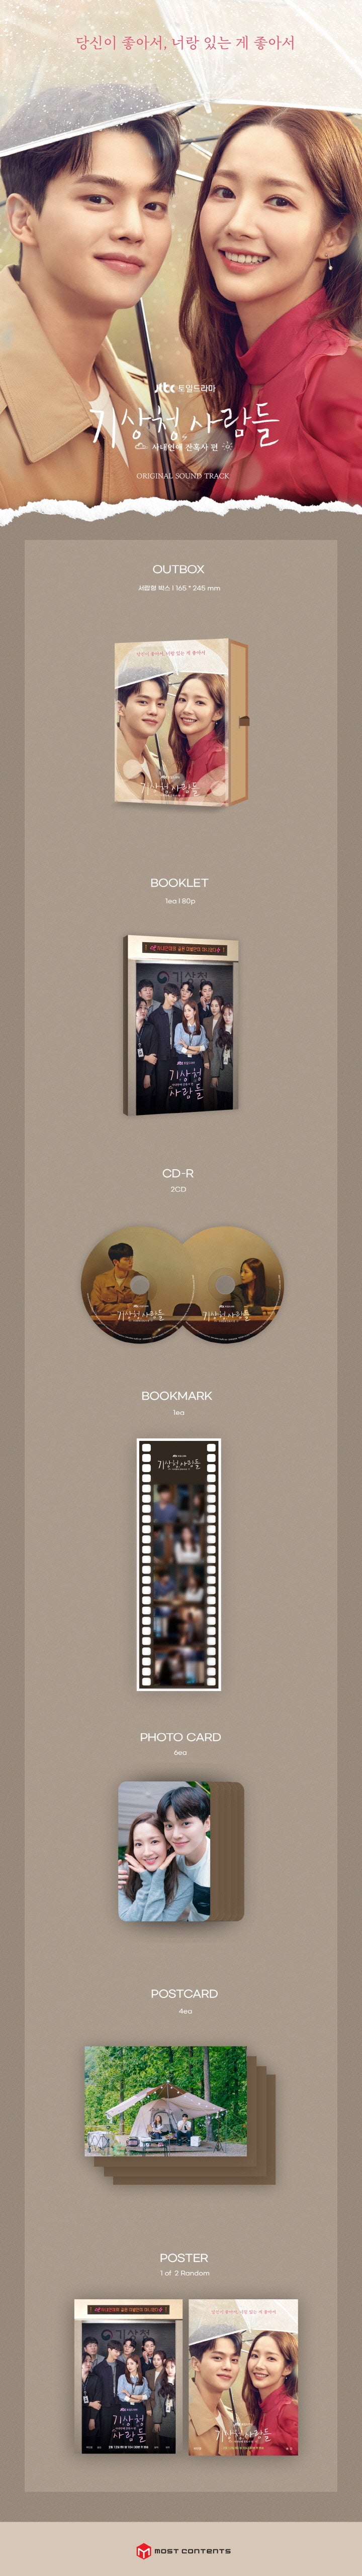 تنبؤات الحب والطقس ألبوم OST (2CD)